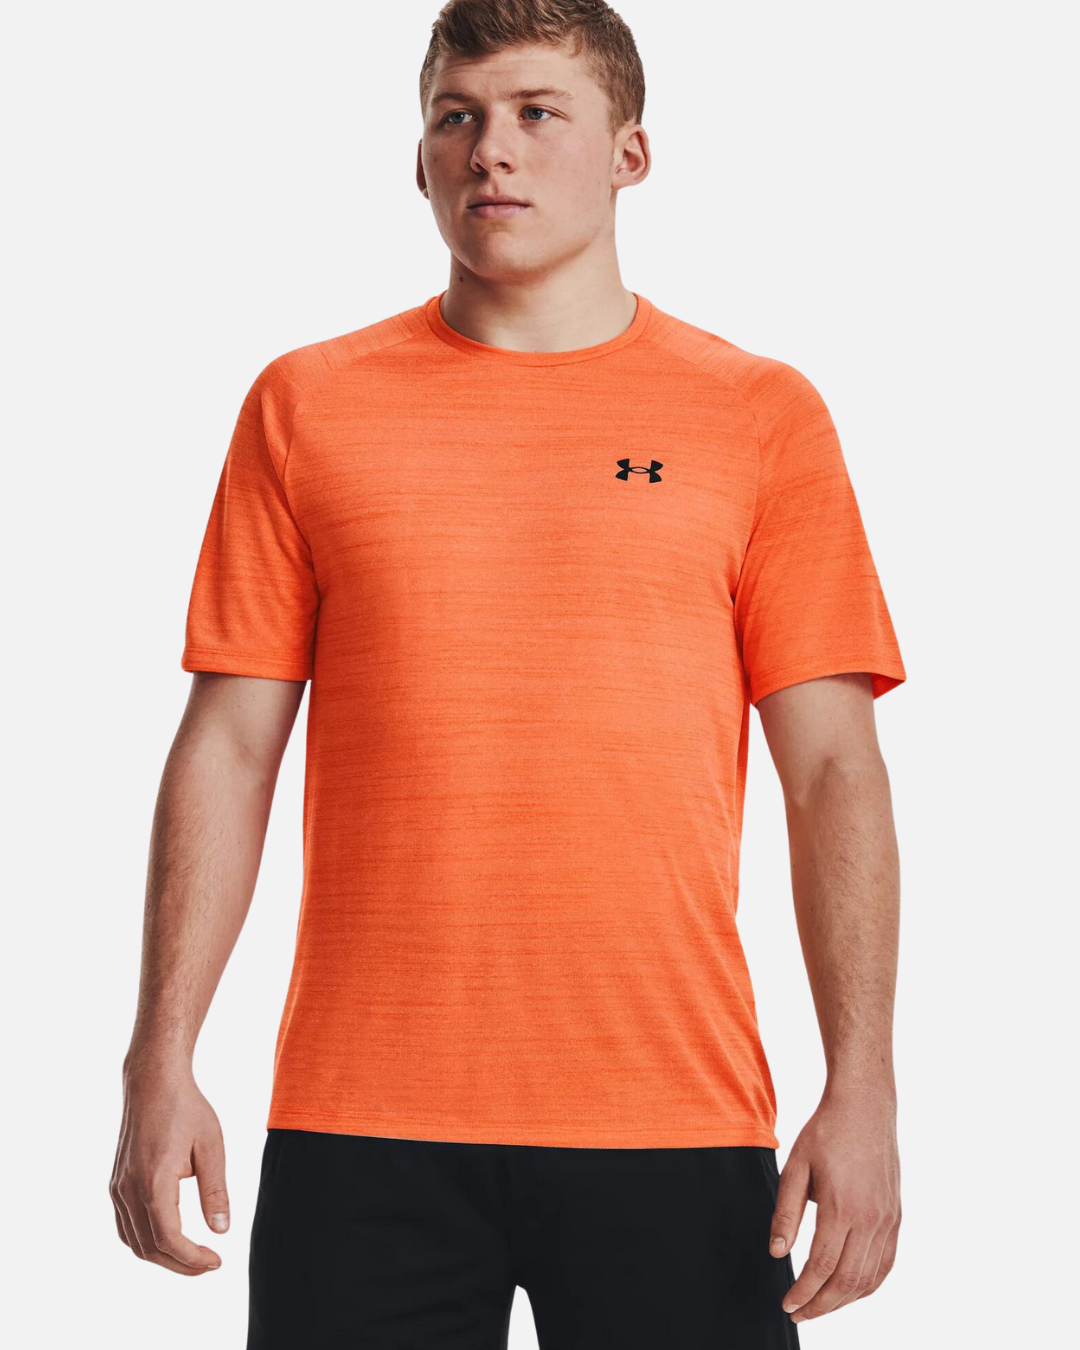 T-shirt Under 2.0 Orange – Footkorner - Armour Tech Tiger